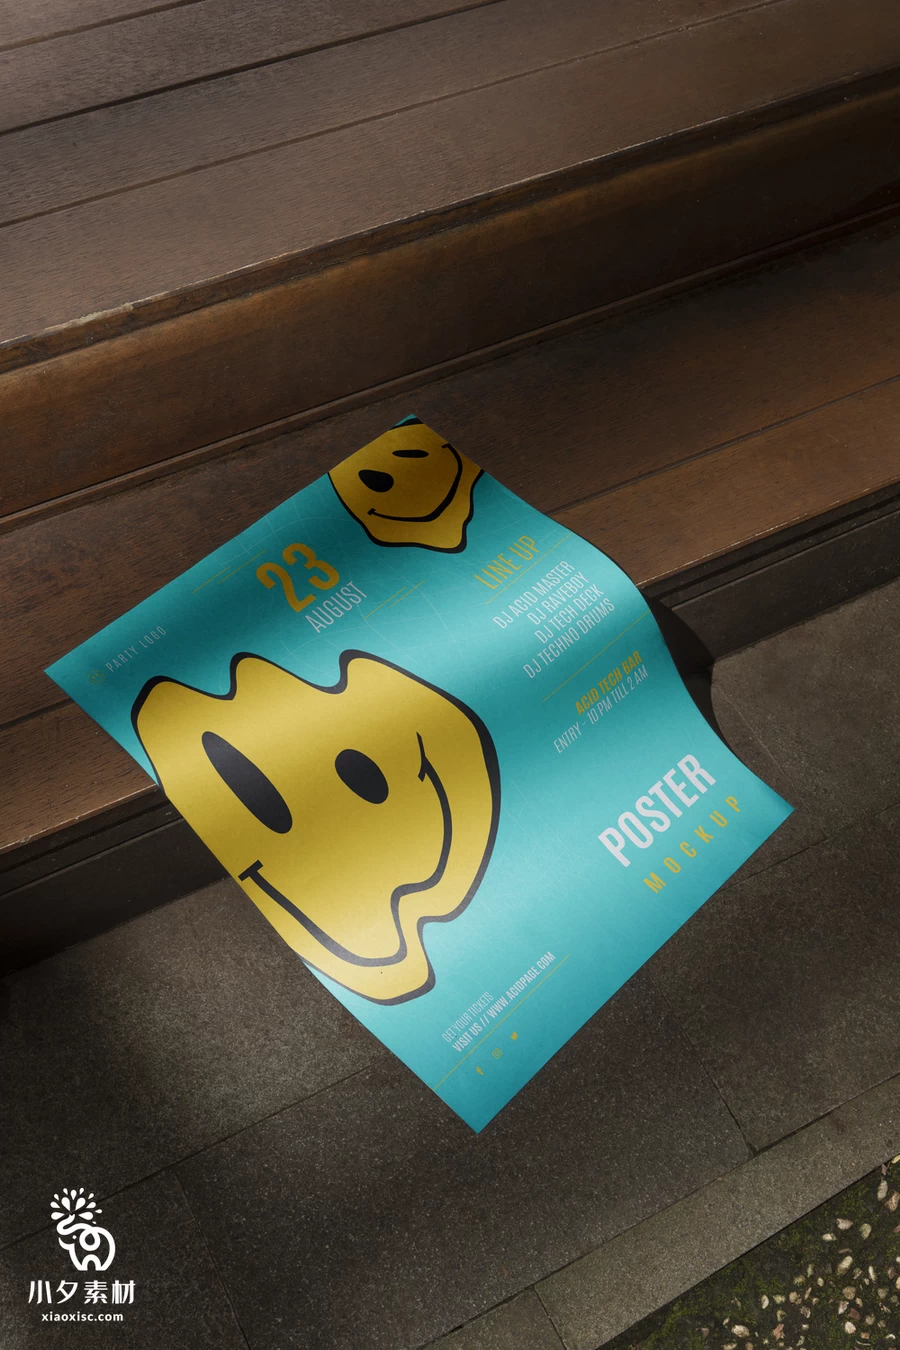 潮流街头混泥土艺术海报广告传单A4纸张vi展示PSD贴图设计样机【001】